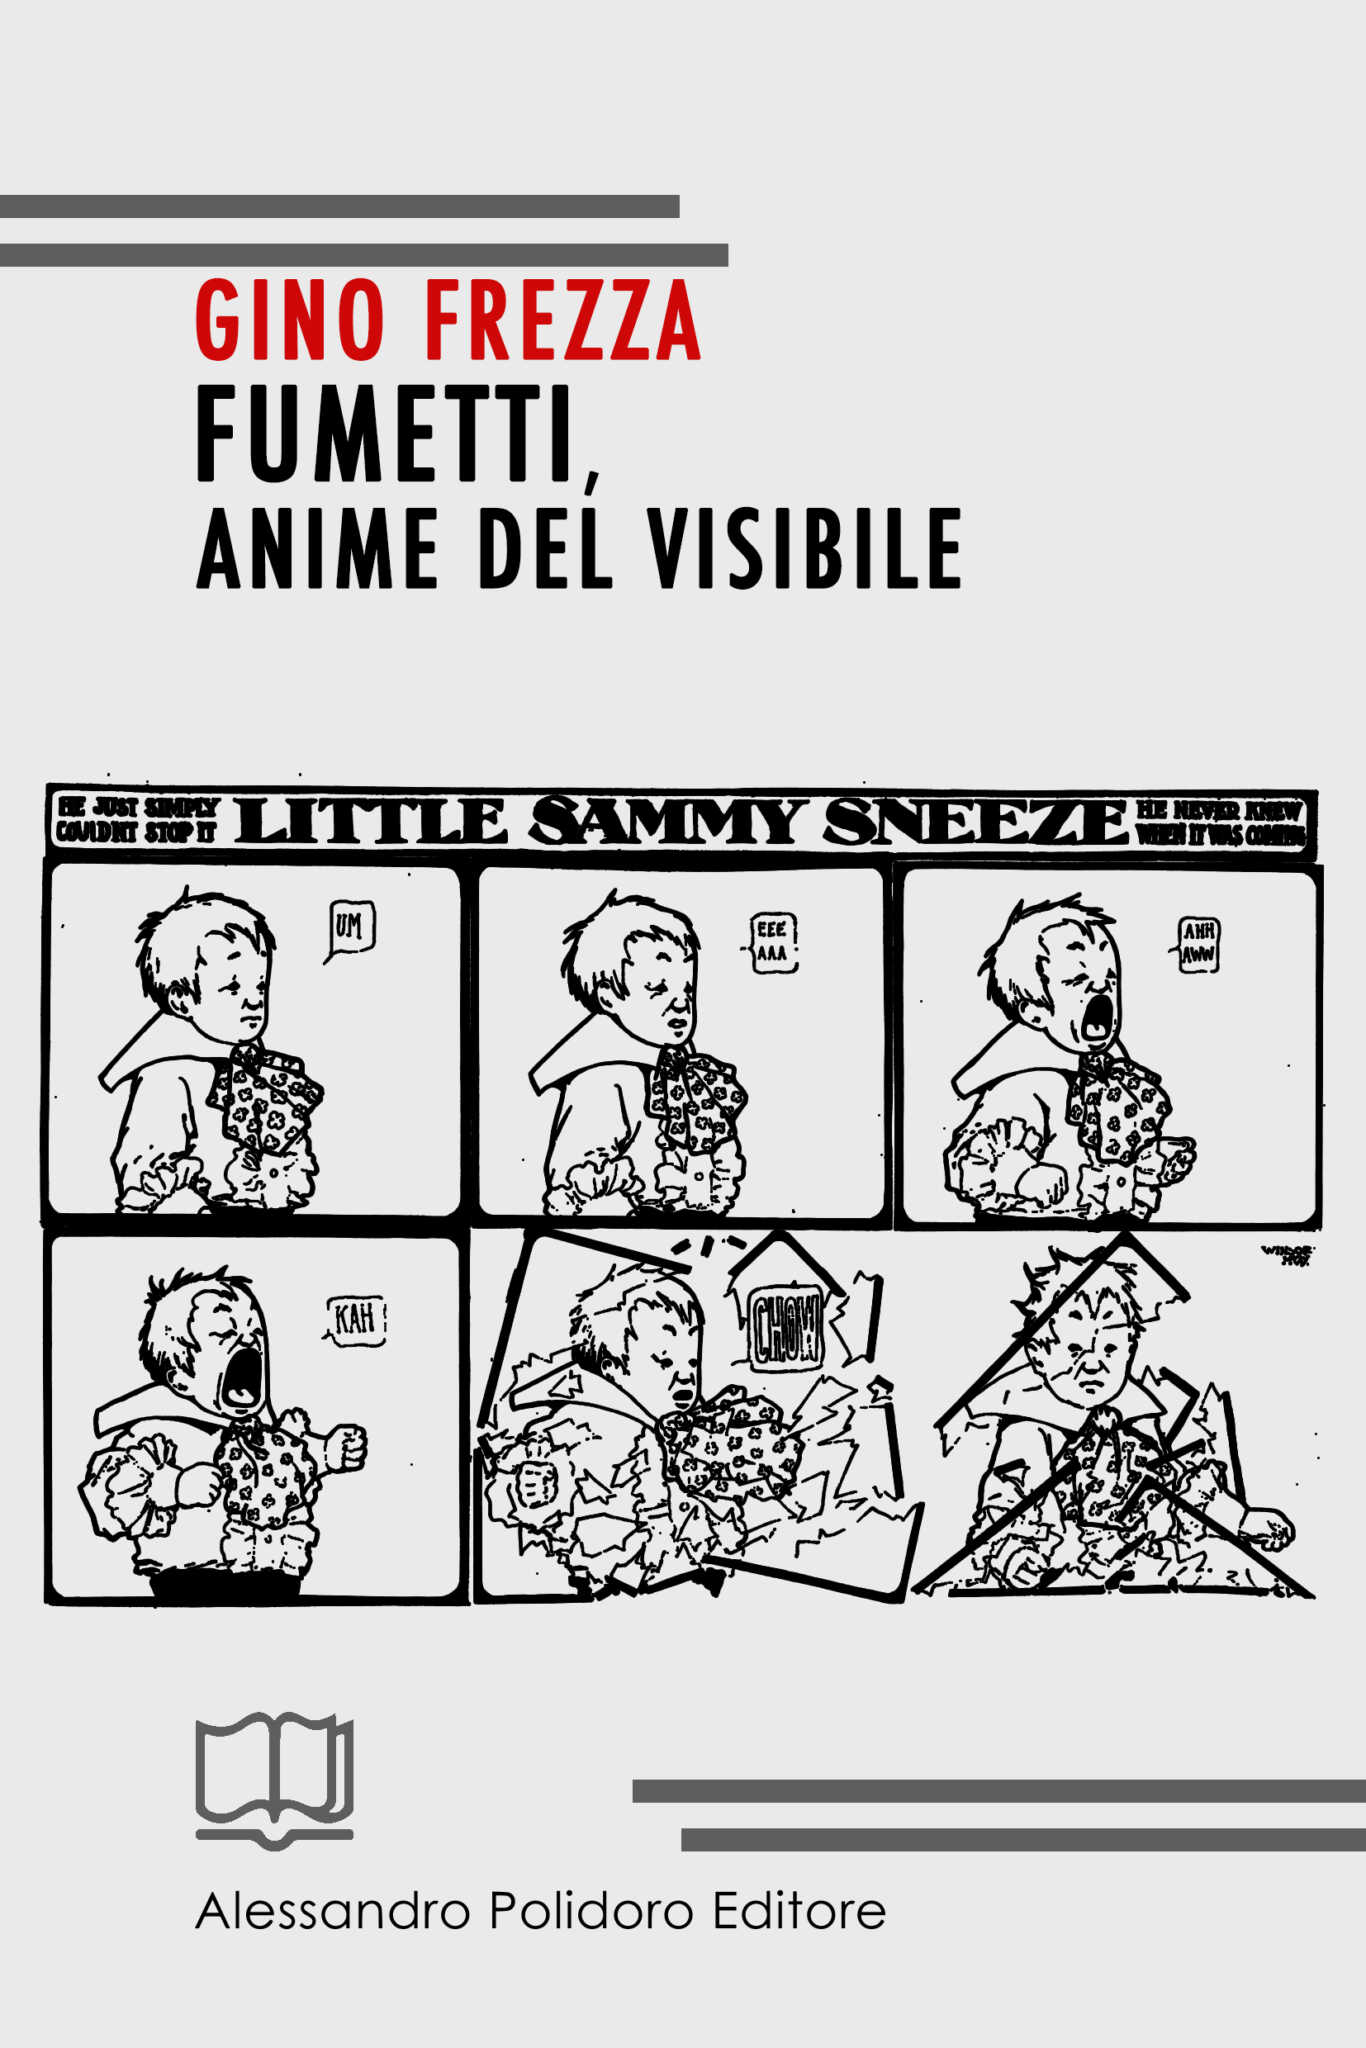 Fumetti. ‘Anime del visibile’ di Gino Frezza per Alessandro Polidoro Editore